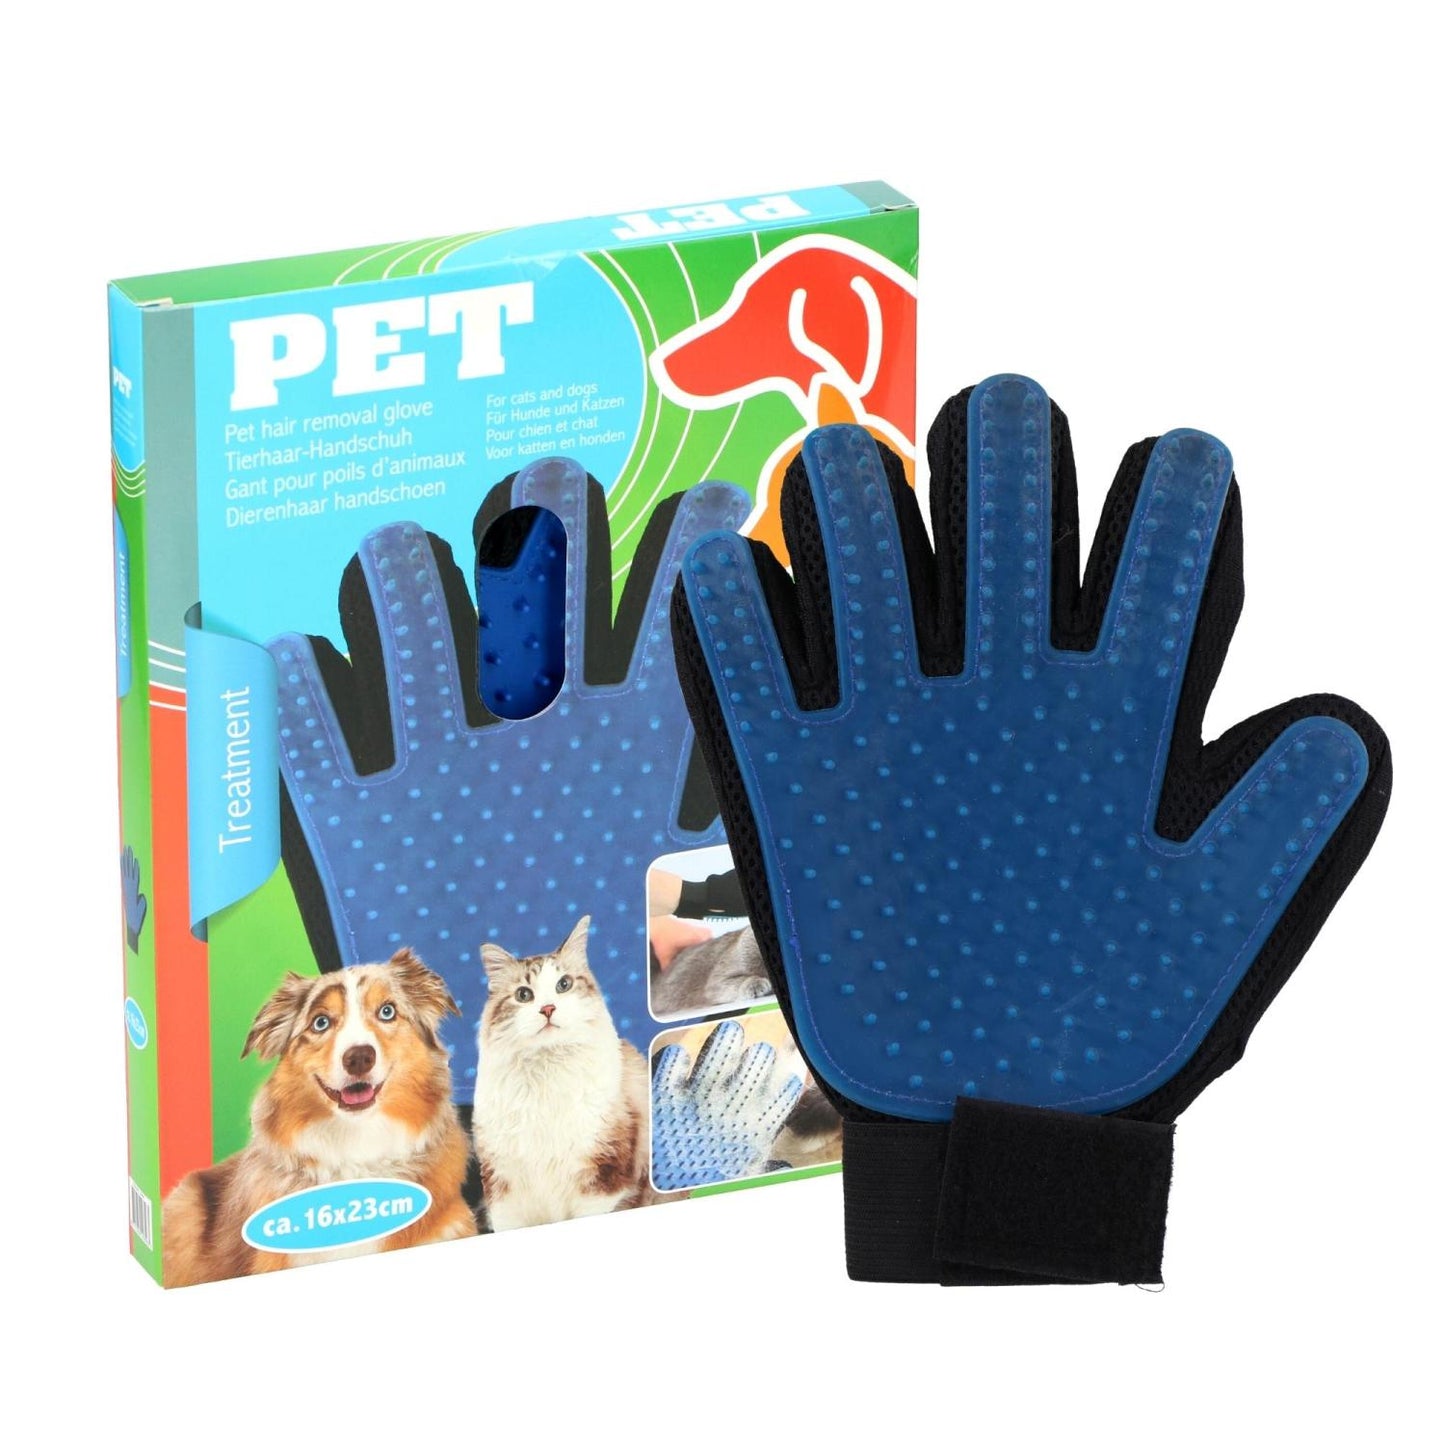 Handschoenen voor dierenverzorging - Pet Treatment - Bivakshop